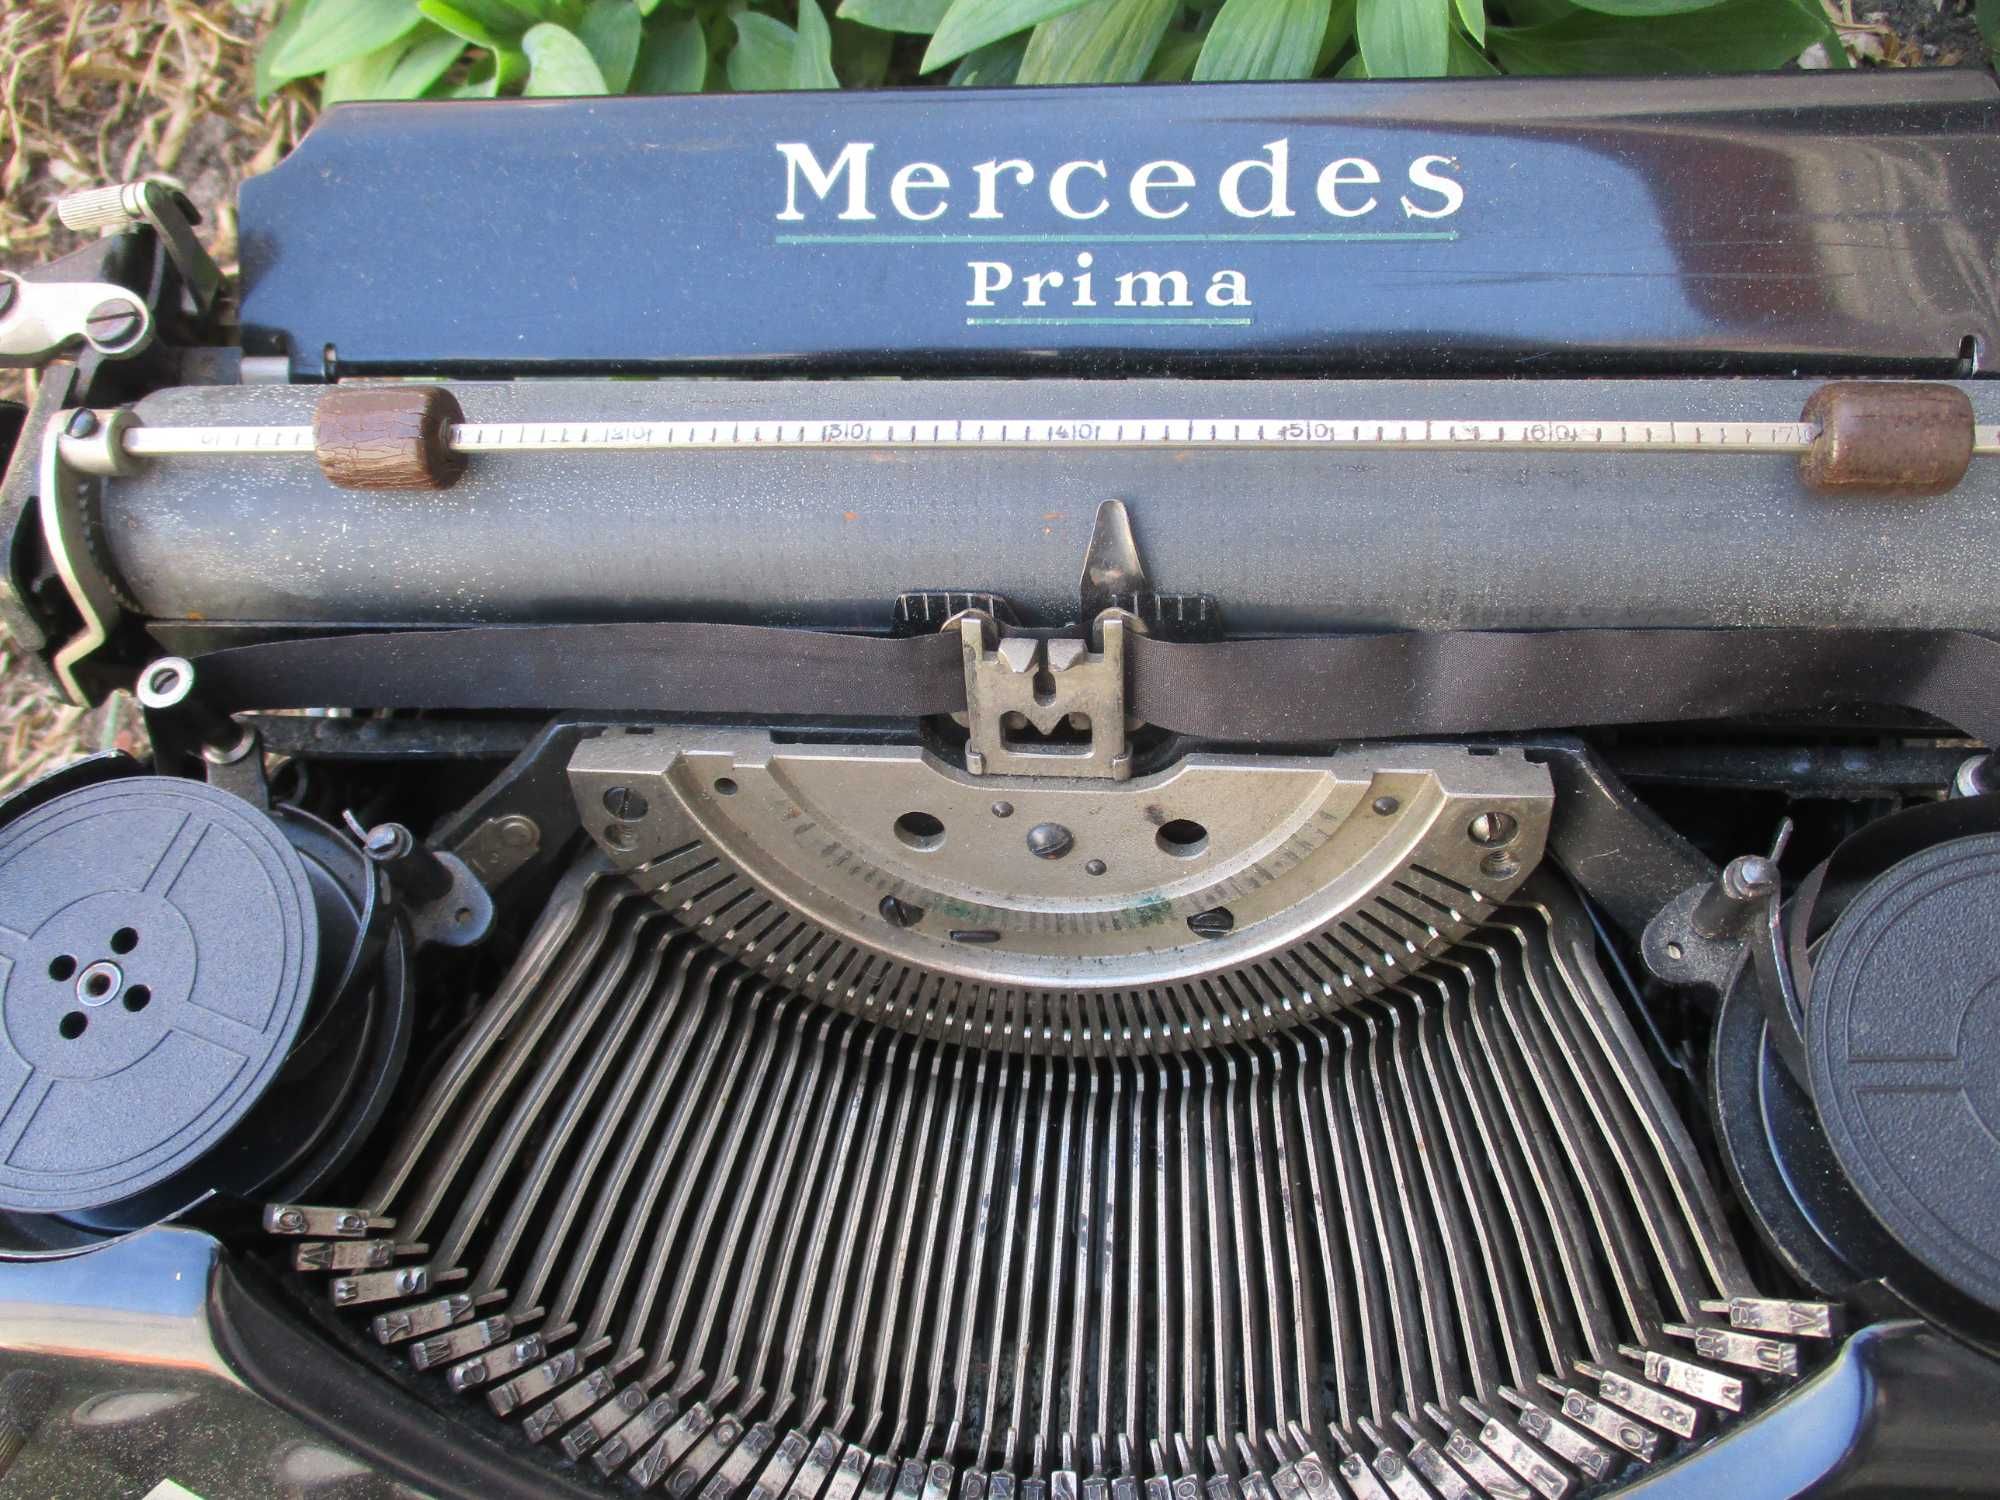 Maquina de escrever antiga Mercedes - 1935